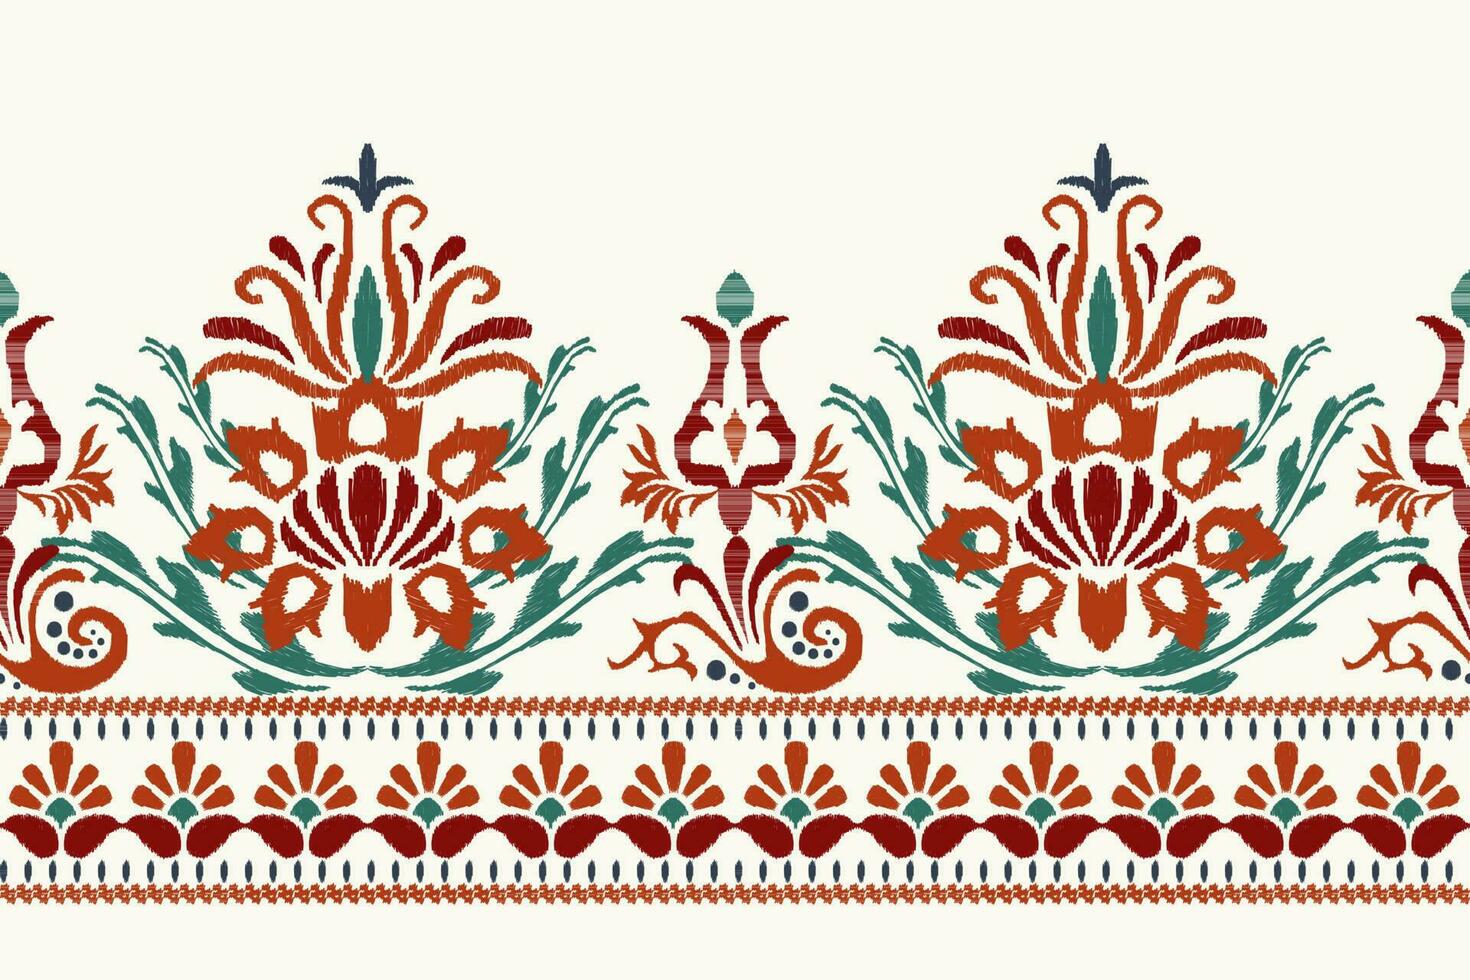 ikat floral paisley bordado em branco plano de fundo.ikat étnico oriental padronizar tradicional.asteca estilo abstrato vetor ilustração.design para textura,tecido,vestuário,embrulho,decoração,sarongue,imprimir